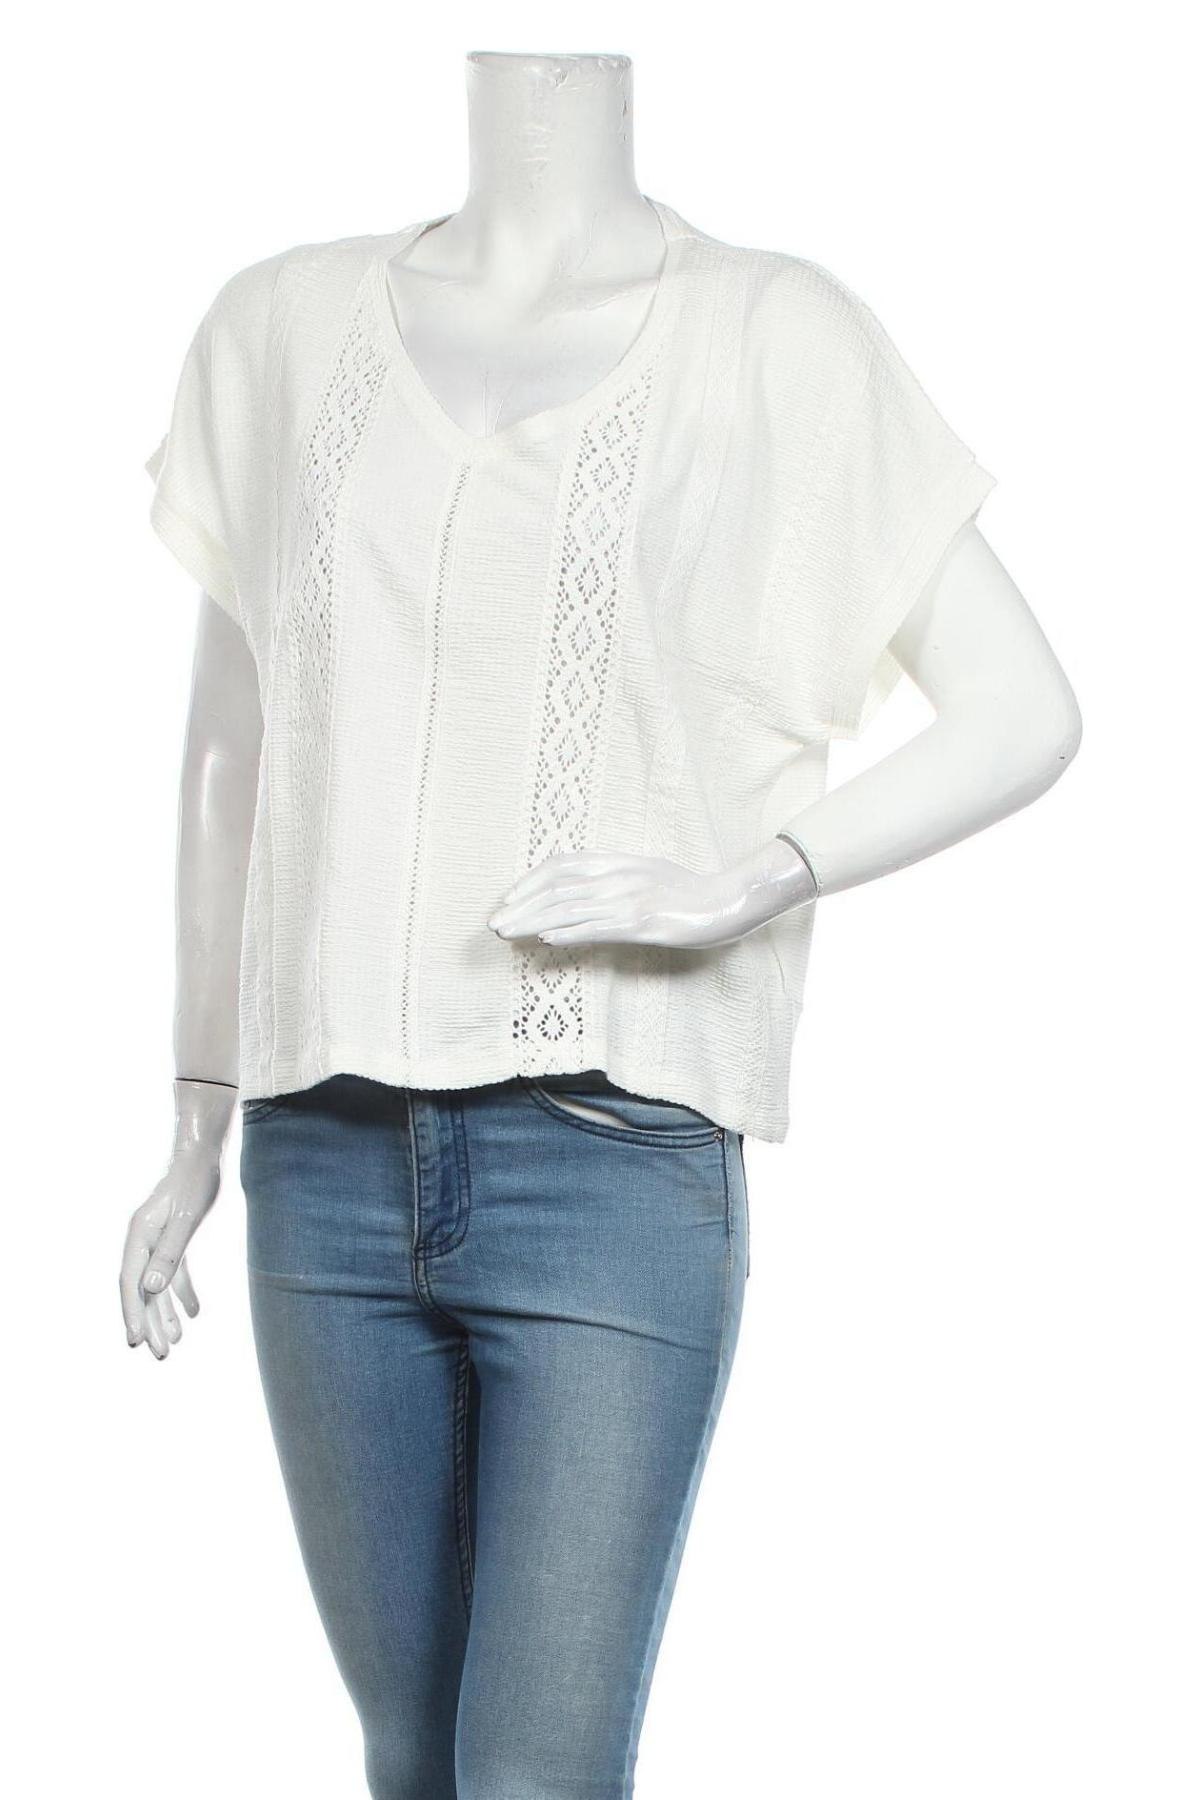 Γυναικεία μπλούζα Mavi, Μέγεθος L, Χρώμα Λευκό, 95% βισκόζη, 4% πολυεστέρας, 1% ελαστάνη, Τιμή 14,25 €